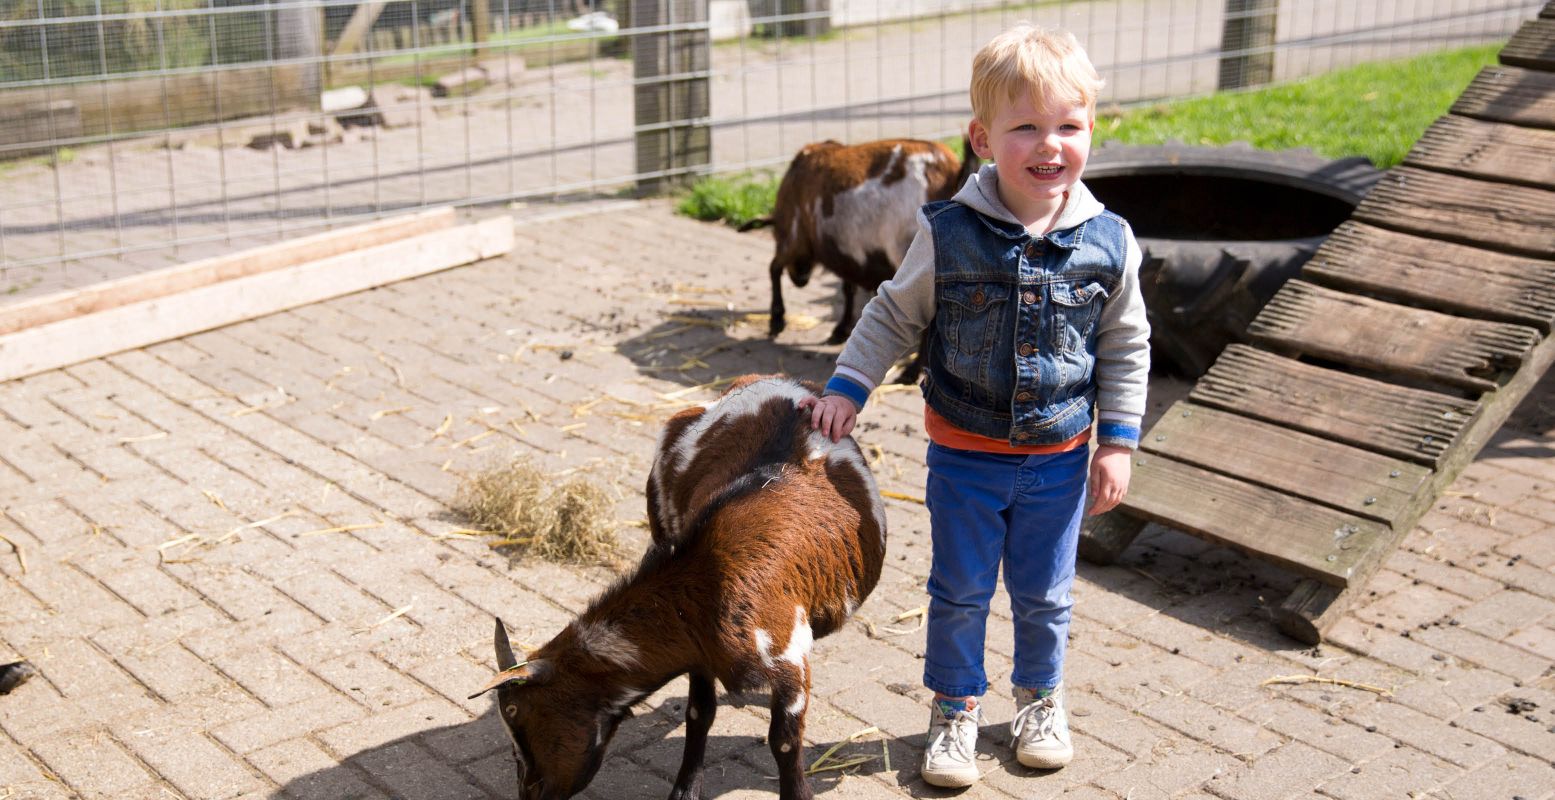 Knuffel met de dieren bij de kinderboerderij. Foto: Speelboerderij De Flierefluiter